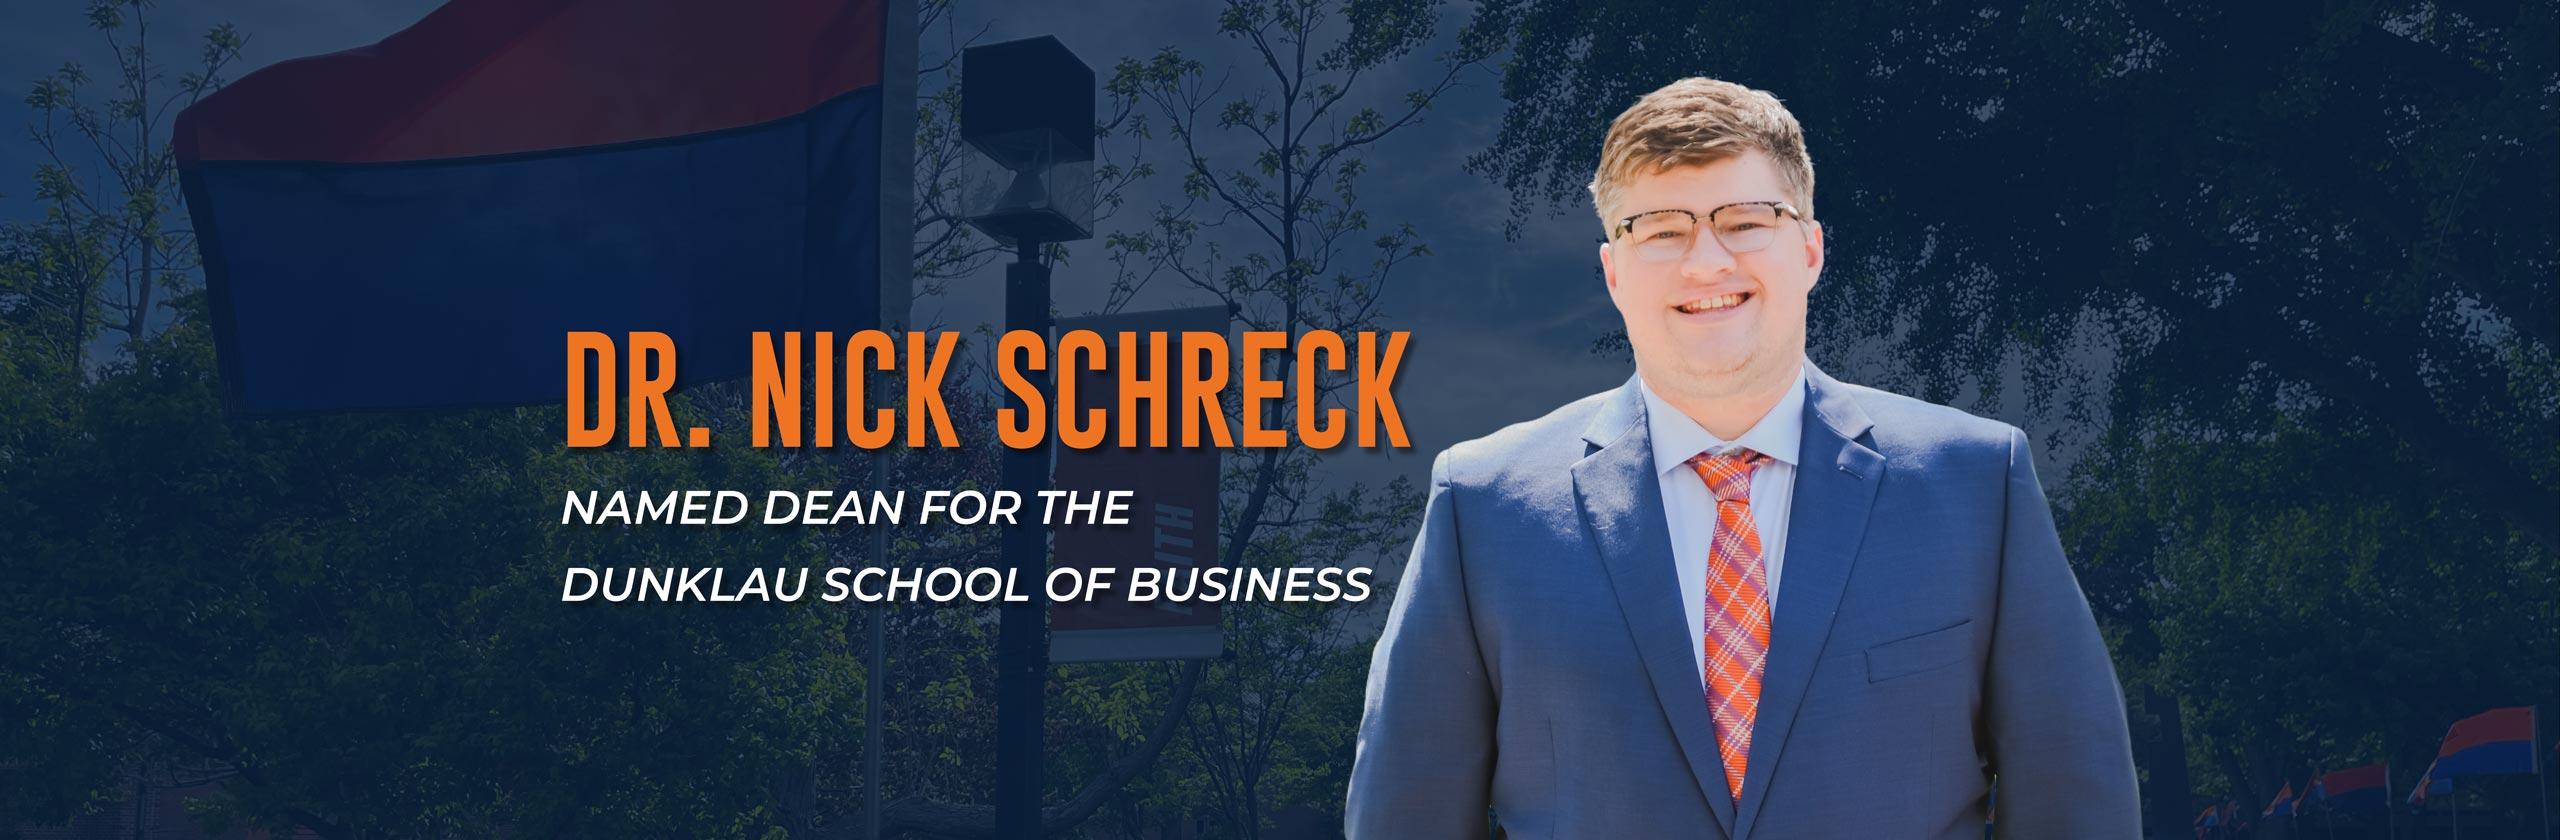 Dr. Nick Schreck